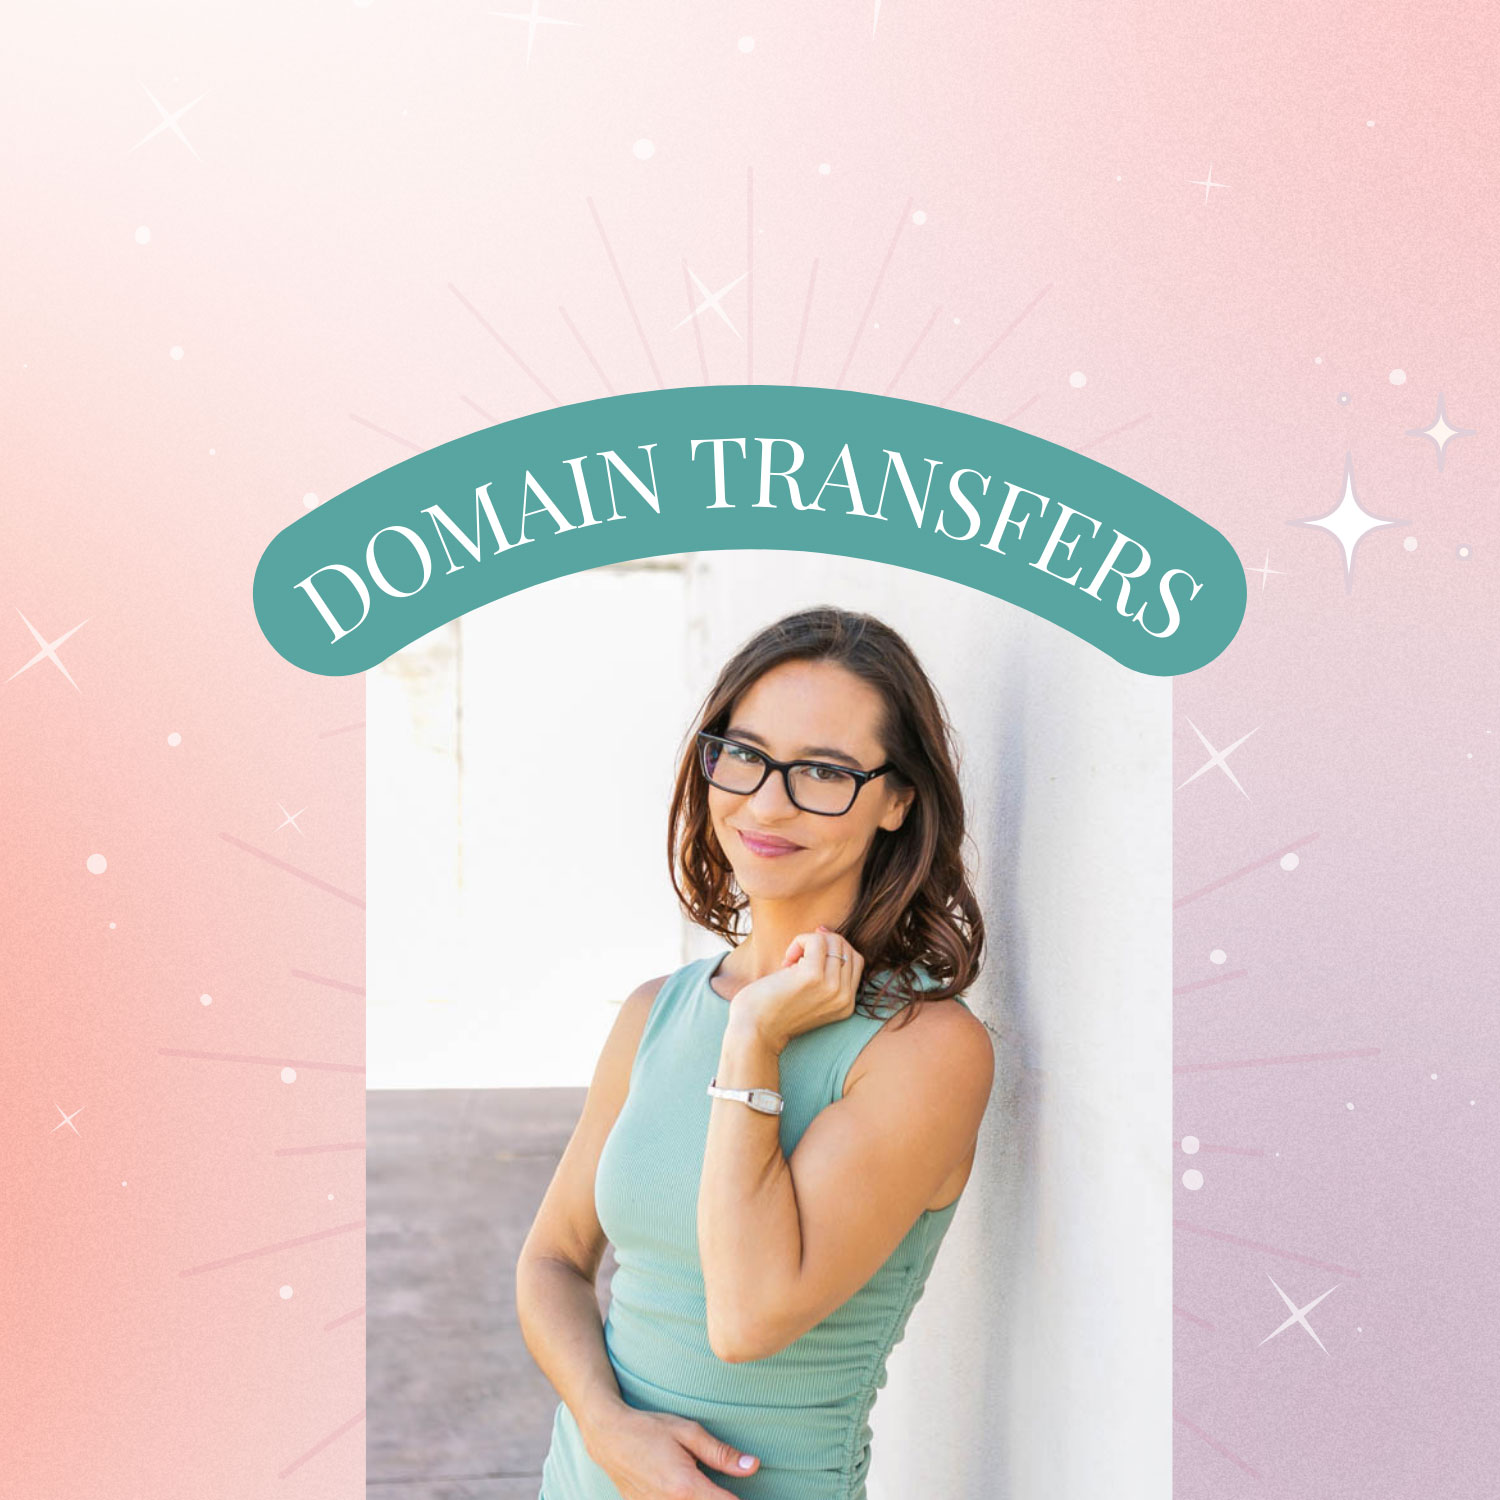 Google Domain Transfer Guide